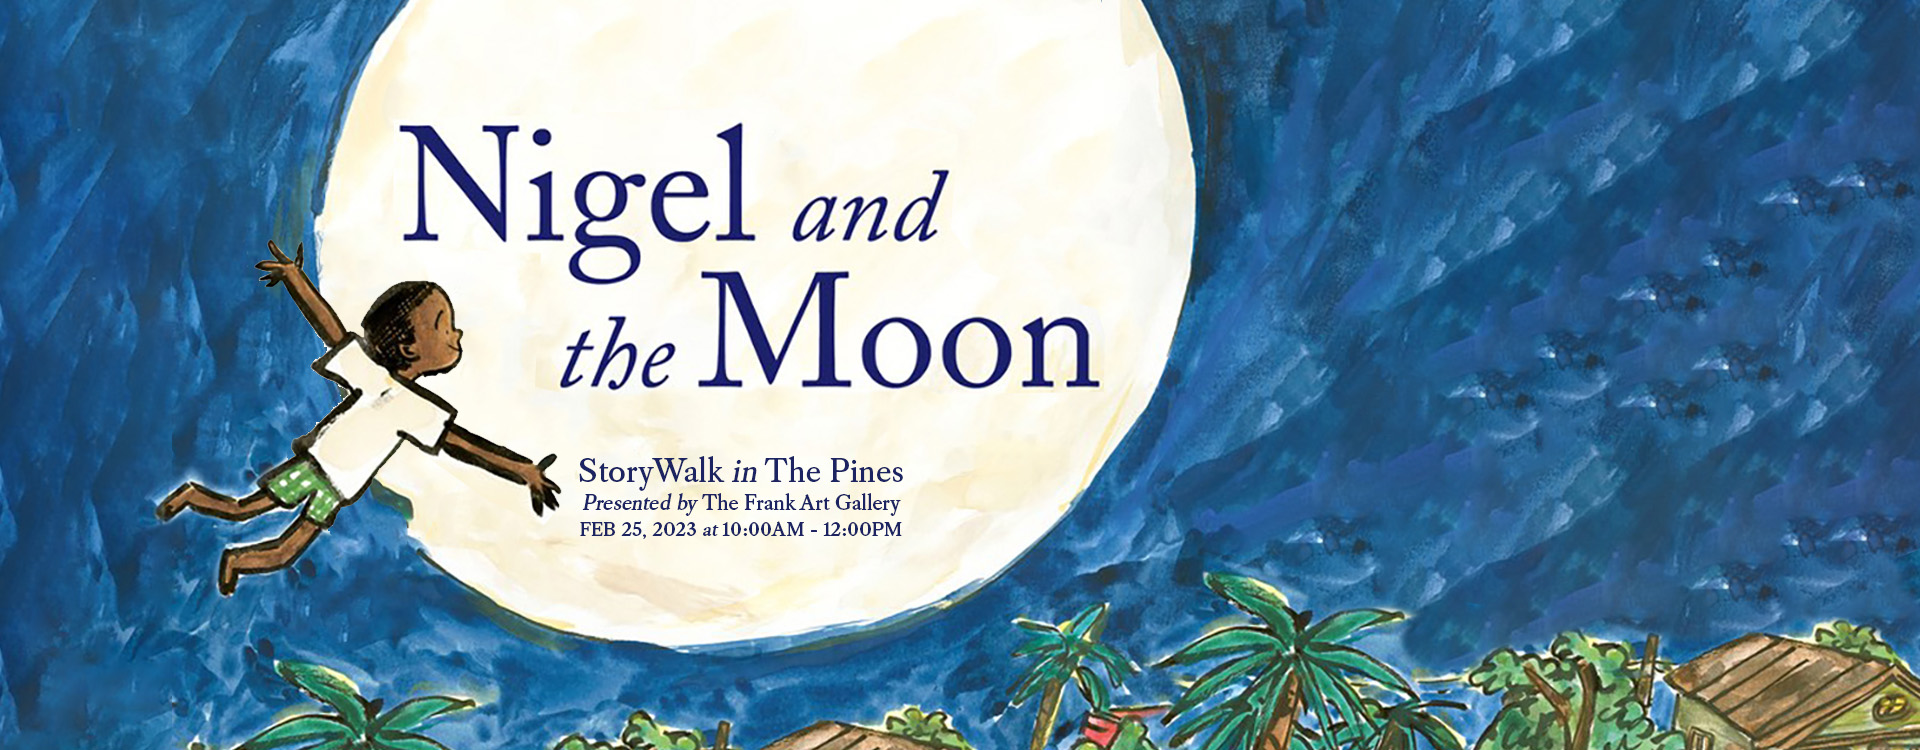 StoryWalk in The Pines - Nigel in the Moon